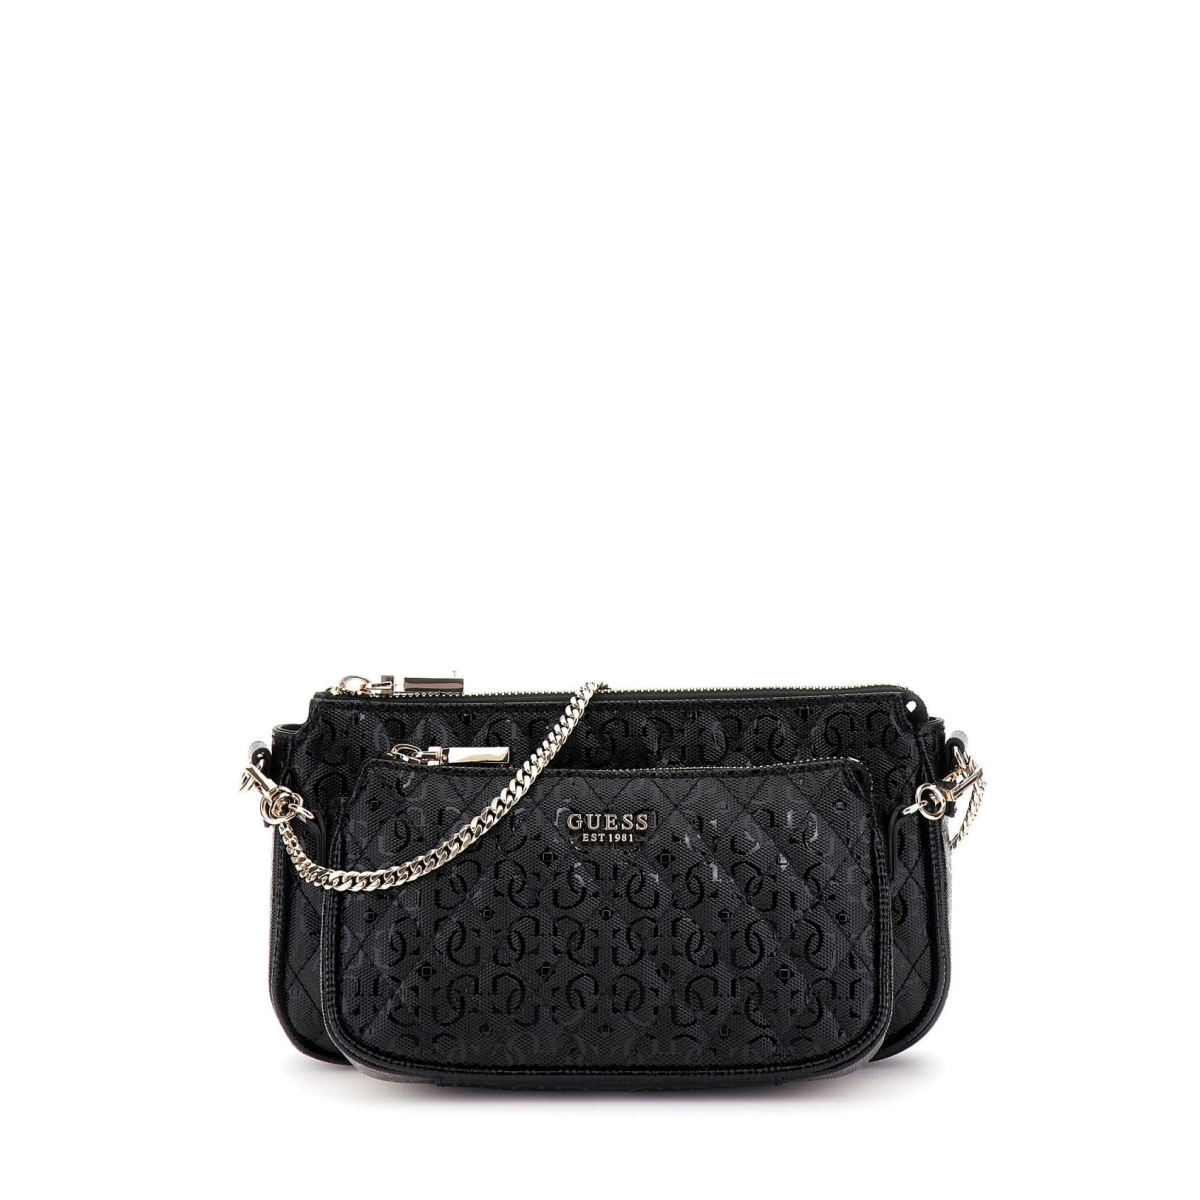 Guess dámská stylová kabelka - černá - One size